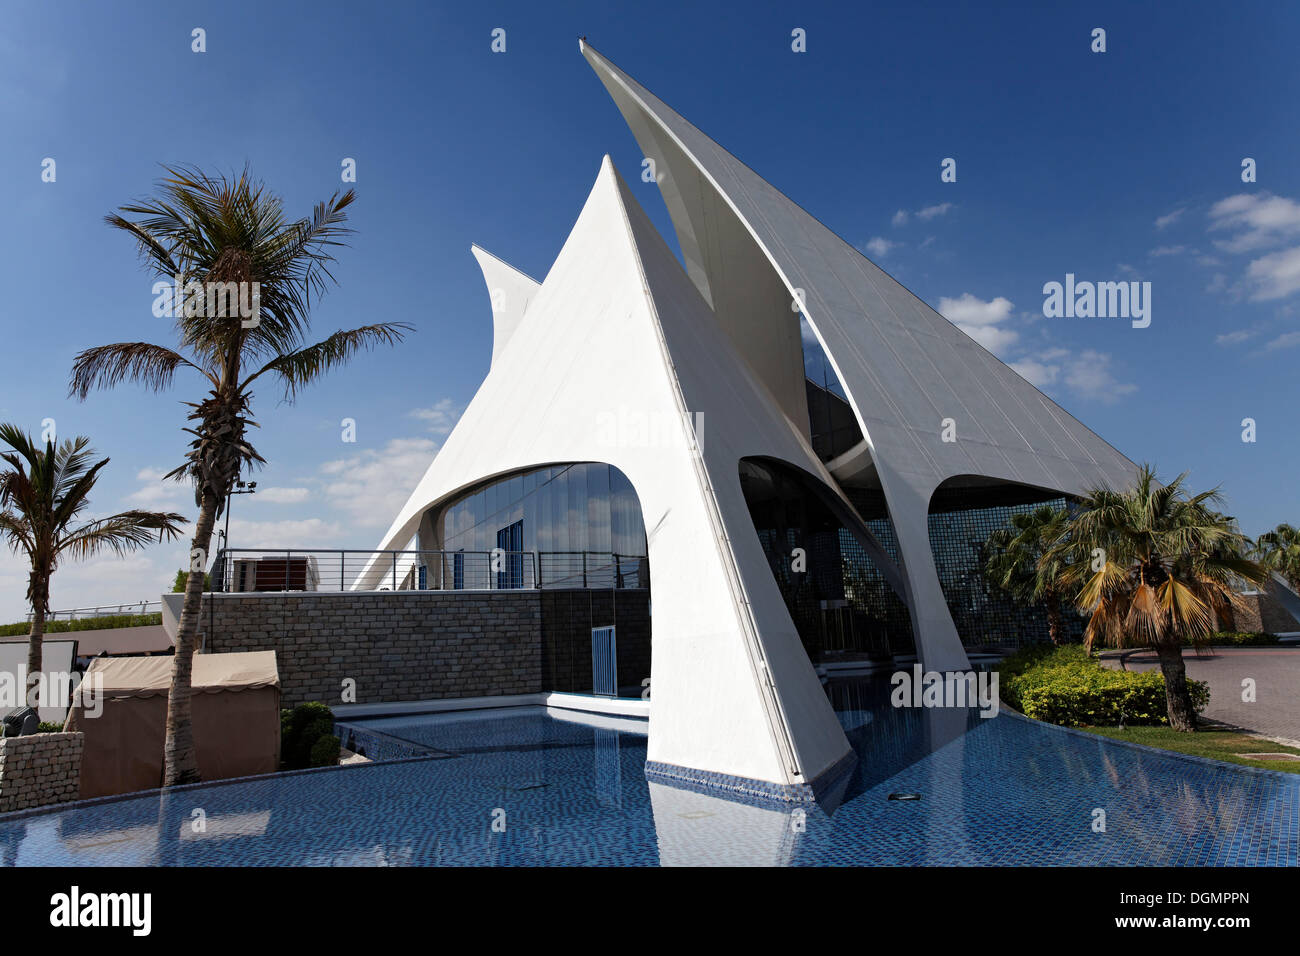 Edificio bianco a forma di vele, Dubai Creek Golf Club, Dubai, Emirati Arabi Uniti, Medio Oriente e Asia Foto Stock